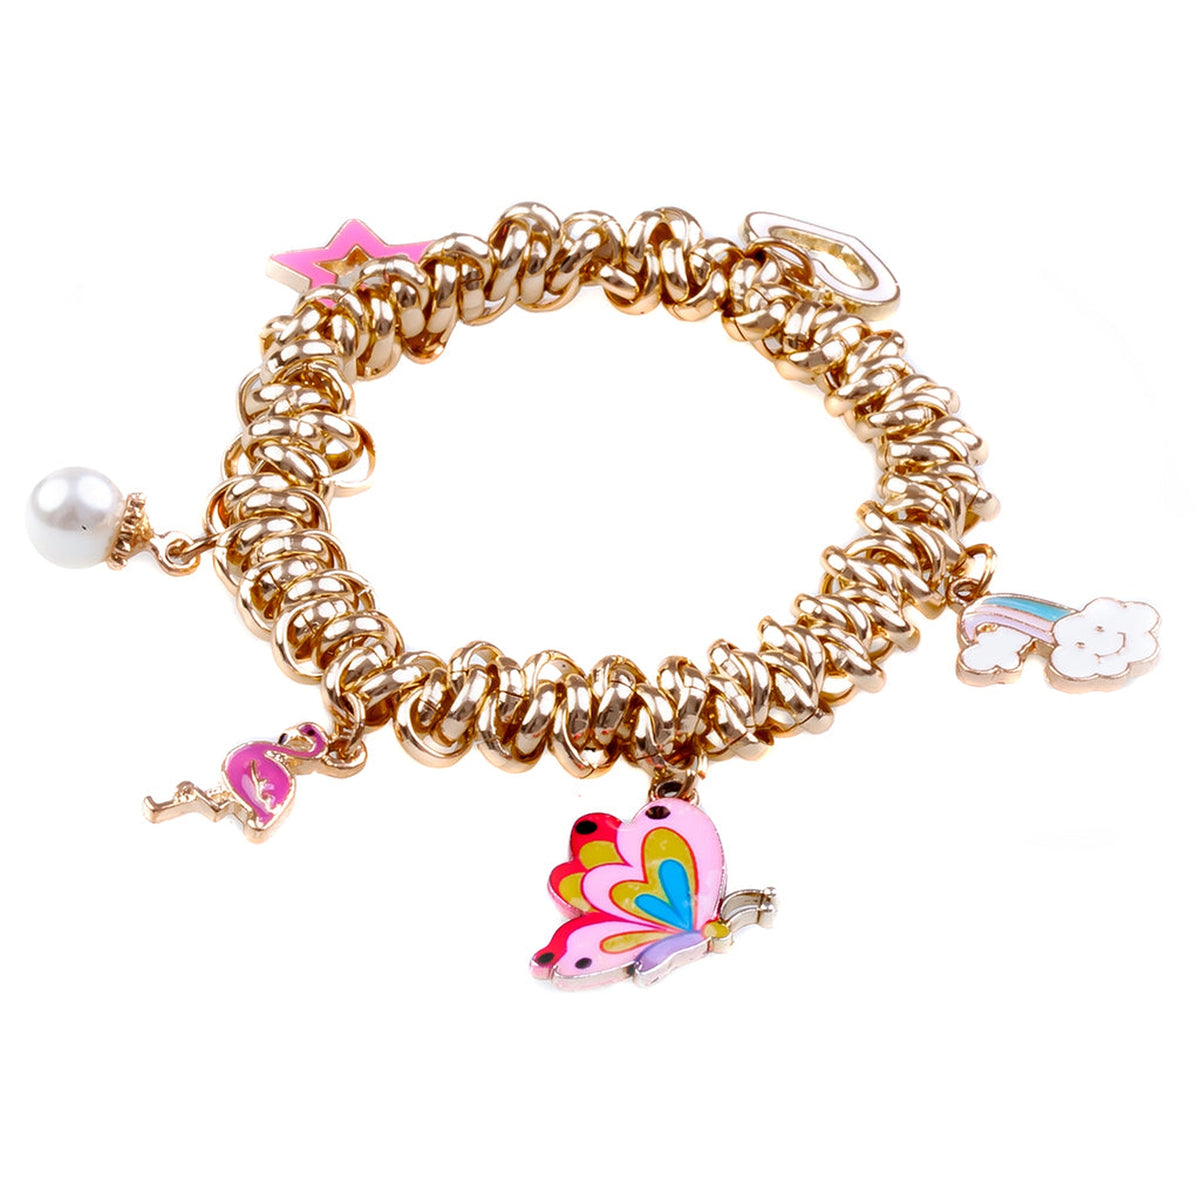 I Love Dance Charm | Kawaii bracelet, Cute jewelry, Charmed